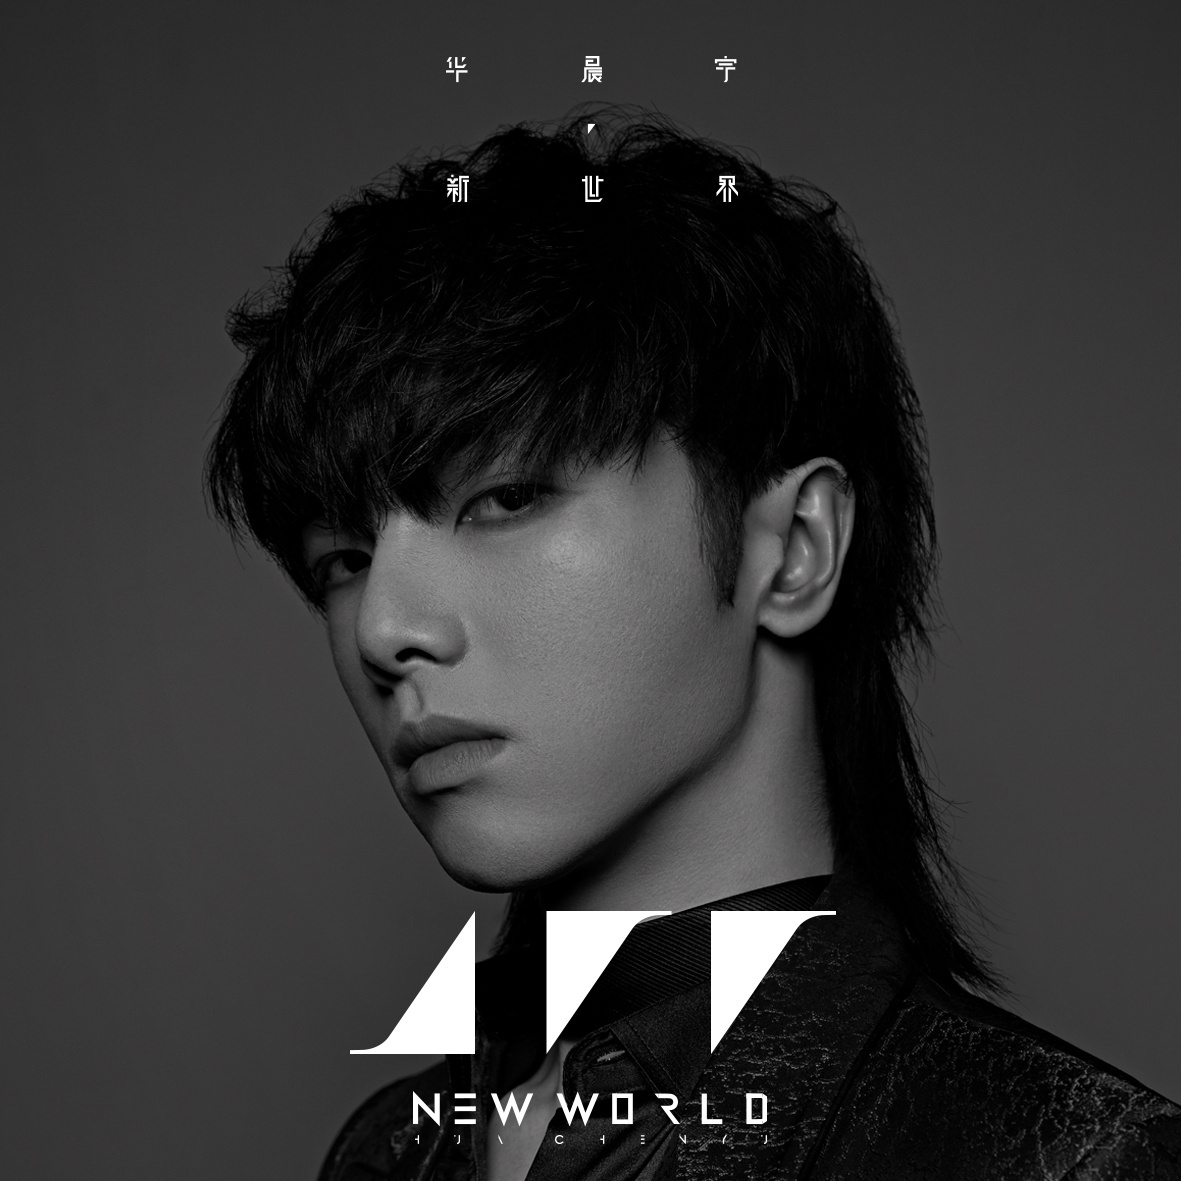 华晨宇上一张专辑《新世界NEW WORLD》。